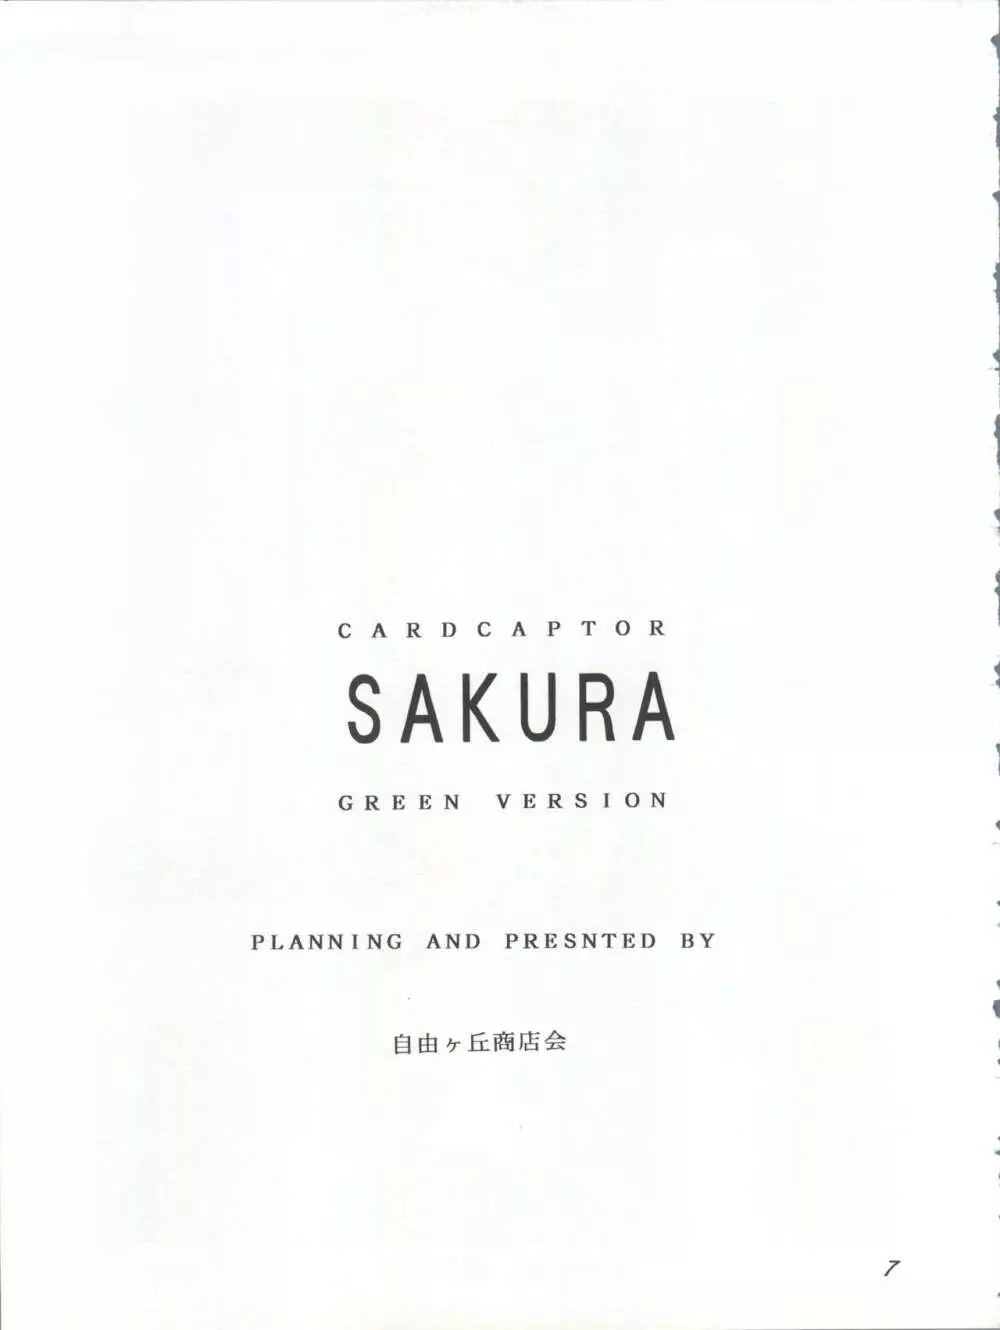 CARD CAPTOR SAKURA GREEN VERSION - page7